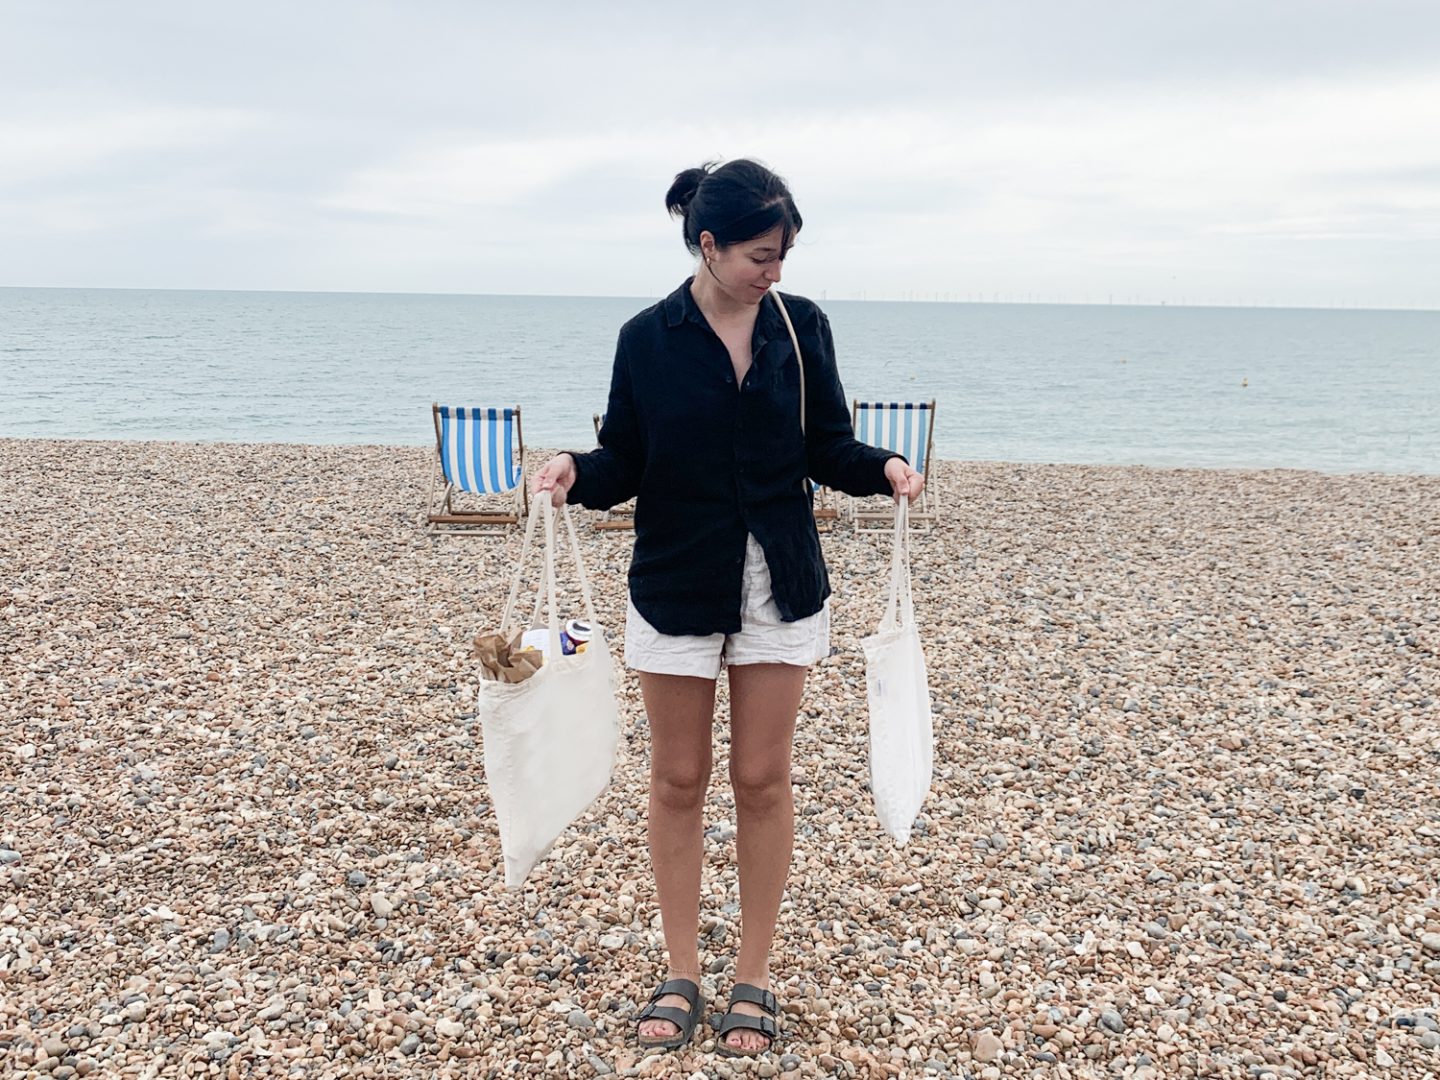 Besma doing a beach clean on Brighton beach